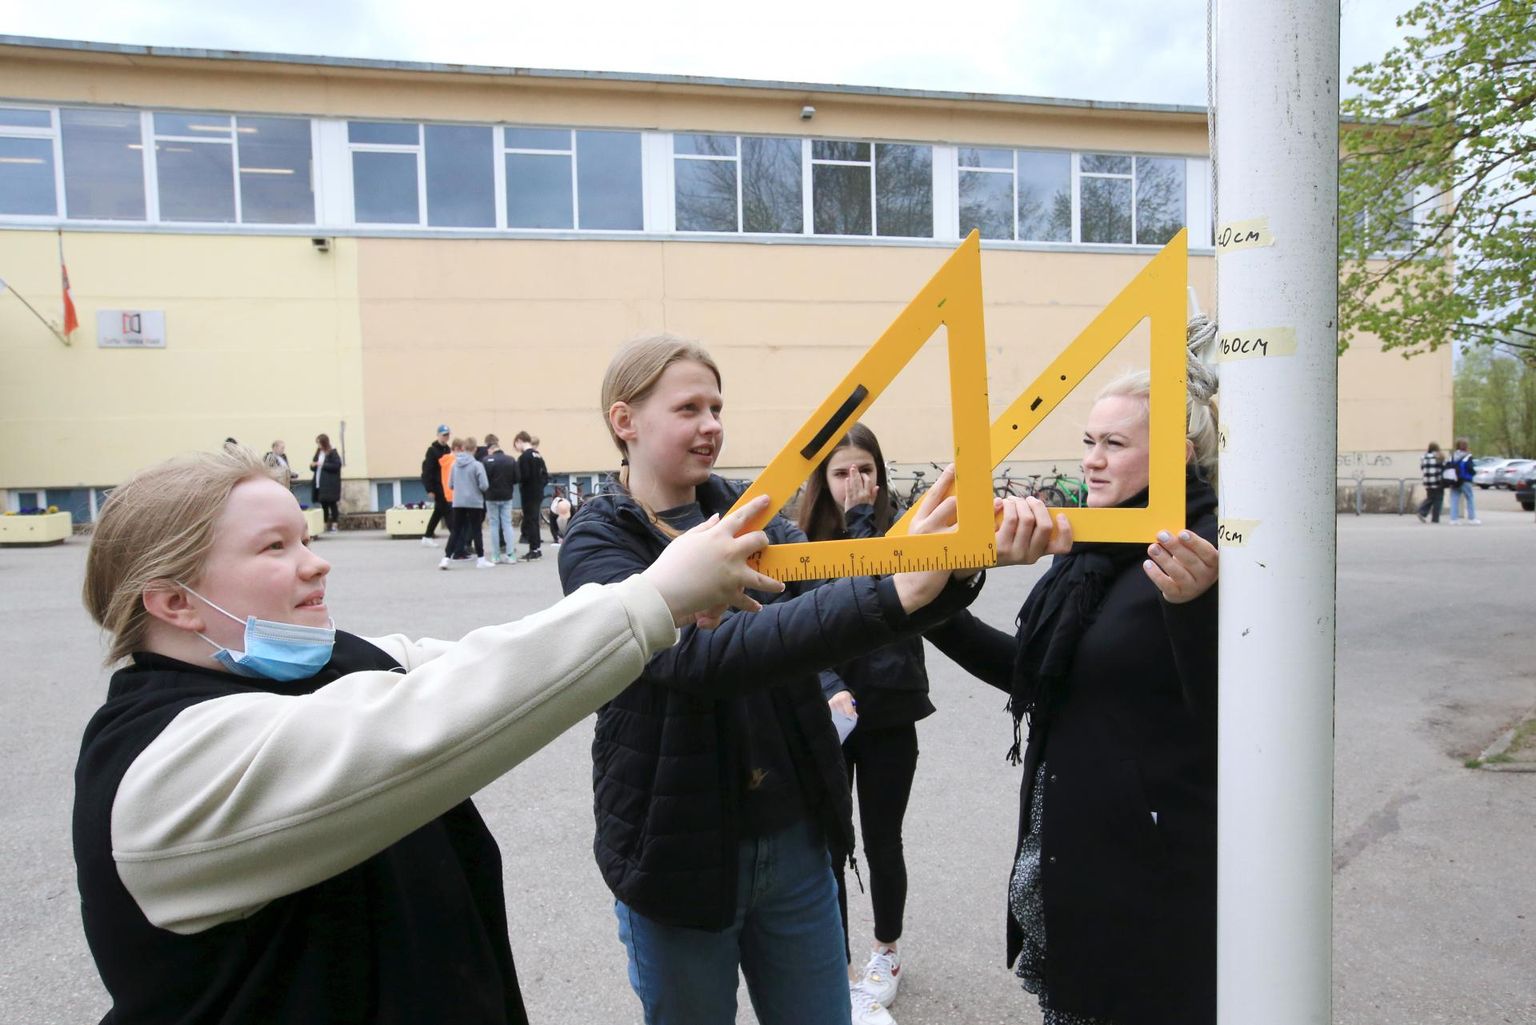 Hansa kooli 6. klass pidas eile värskes õhus loodusõpetuse tundi. Õpilastel Kaile Lepikul (vasakult) ja Kaisa-Liis Lepal tuli mõõta koolimaja ees oleva lipumasti kõrgust. Neile jagas juhtnööre õpetaja Stefi Tomp (paremal).